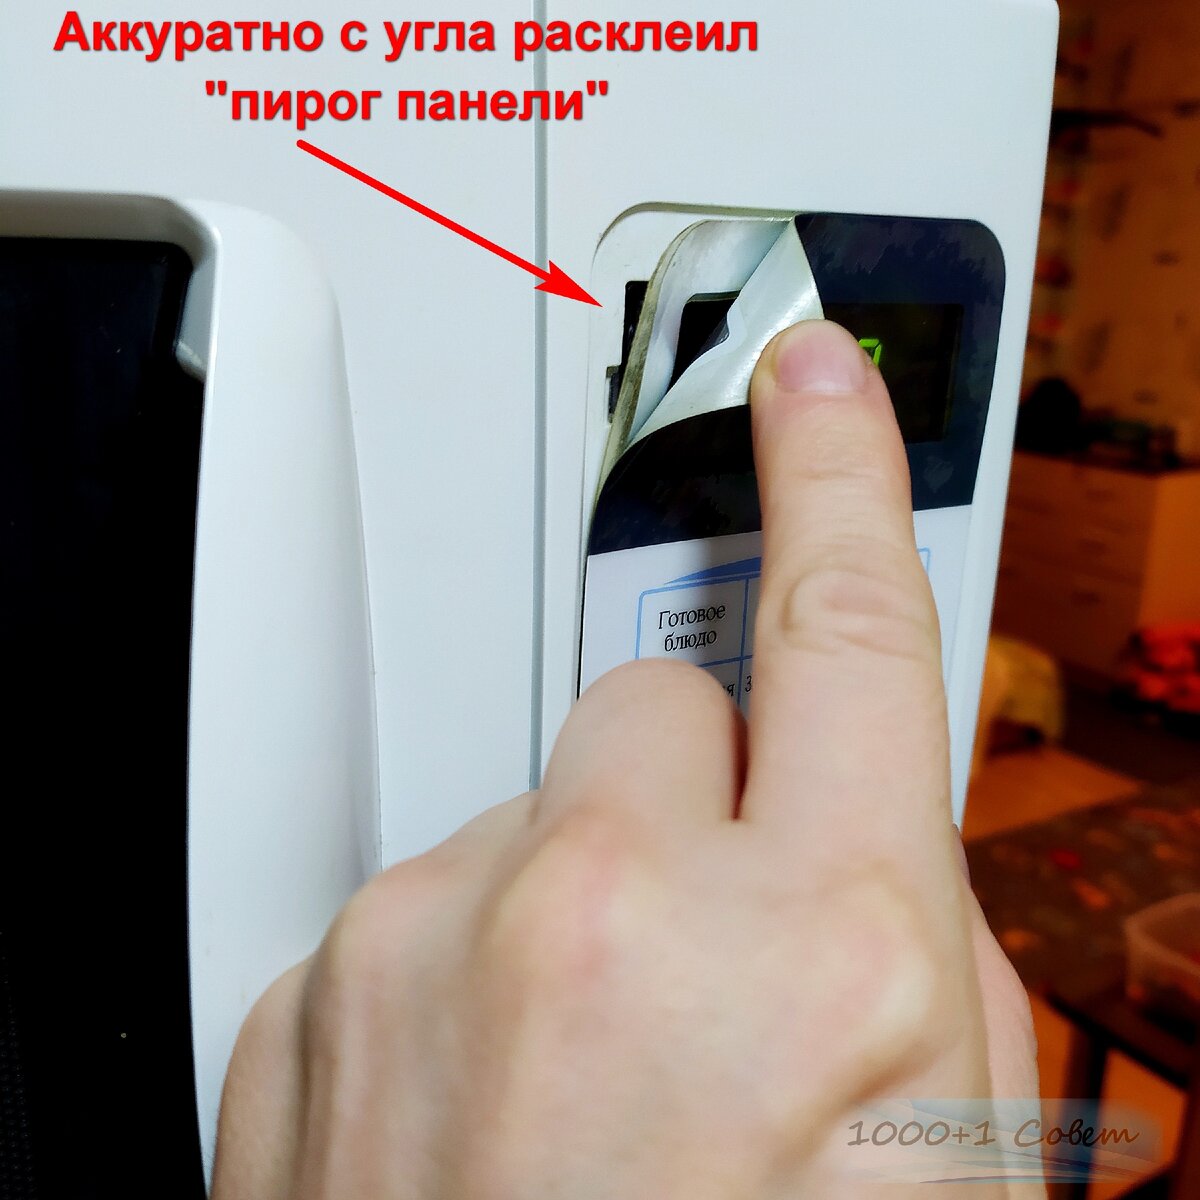 Почему не работают кнопки на микроволновой печи LG? — журнал LG MAGAZINE Россия | LG MAGAZINE